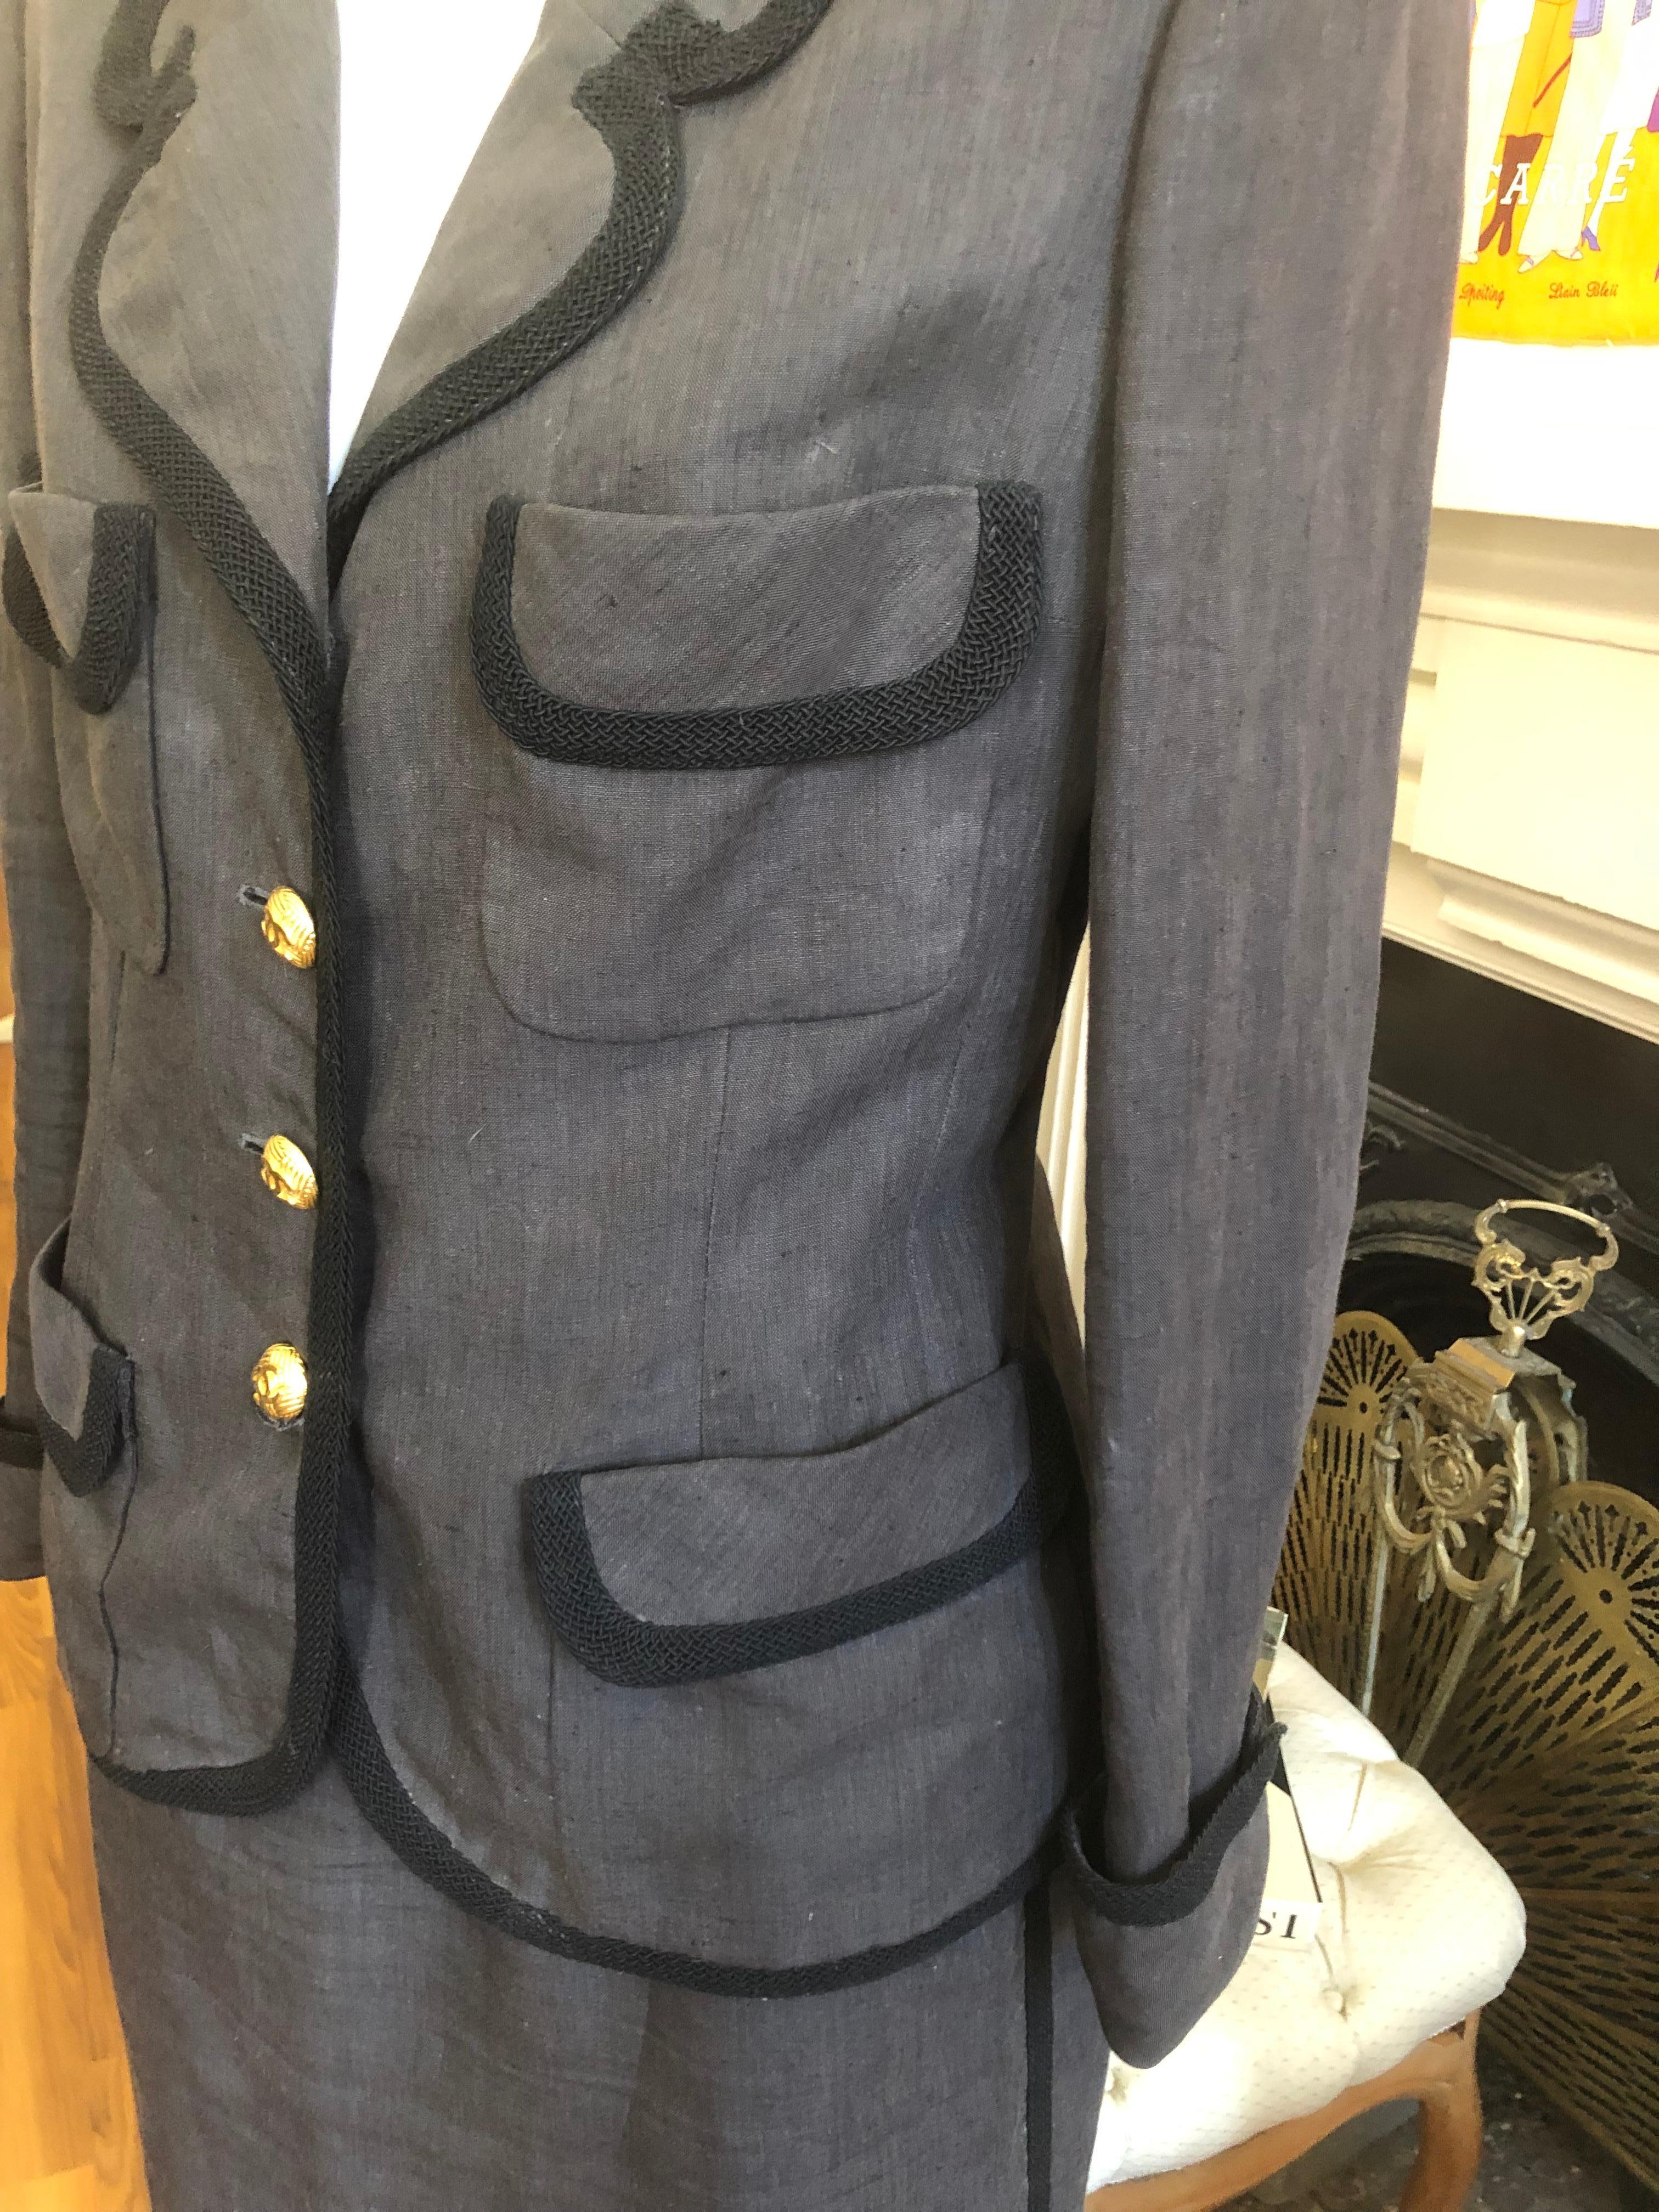 Il s'agit d'un costume en lin de la fin des années 1980, avec des accents de tressage noir, tant sur la veste que sur la jupe. Le costume a été conçu par Karl Lagerfeld et fait partie de la Collection 22. Il est doté d'un revers cranté, d'une